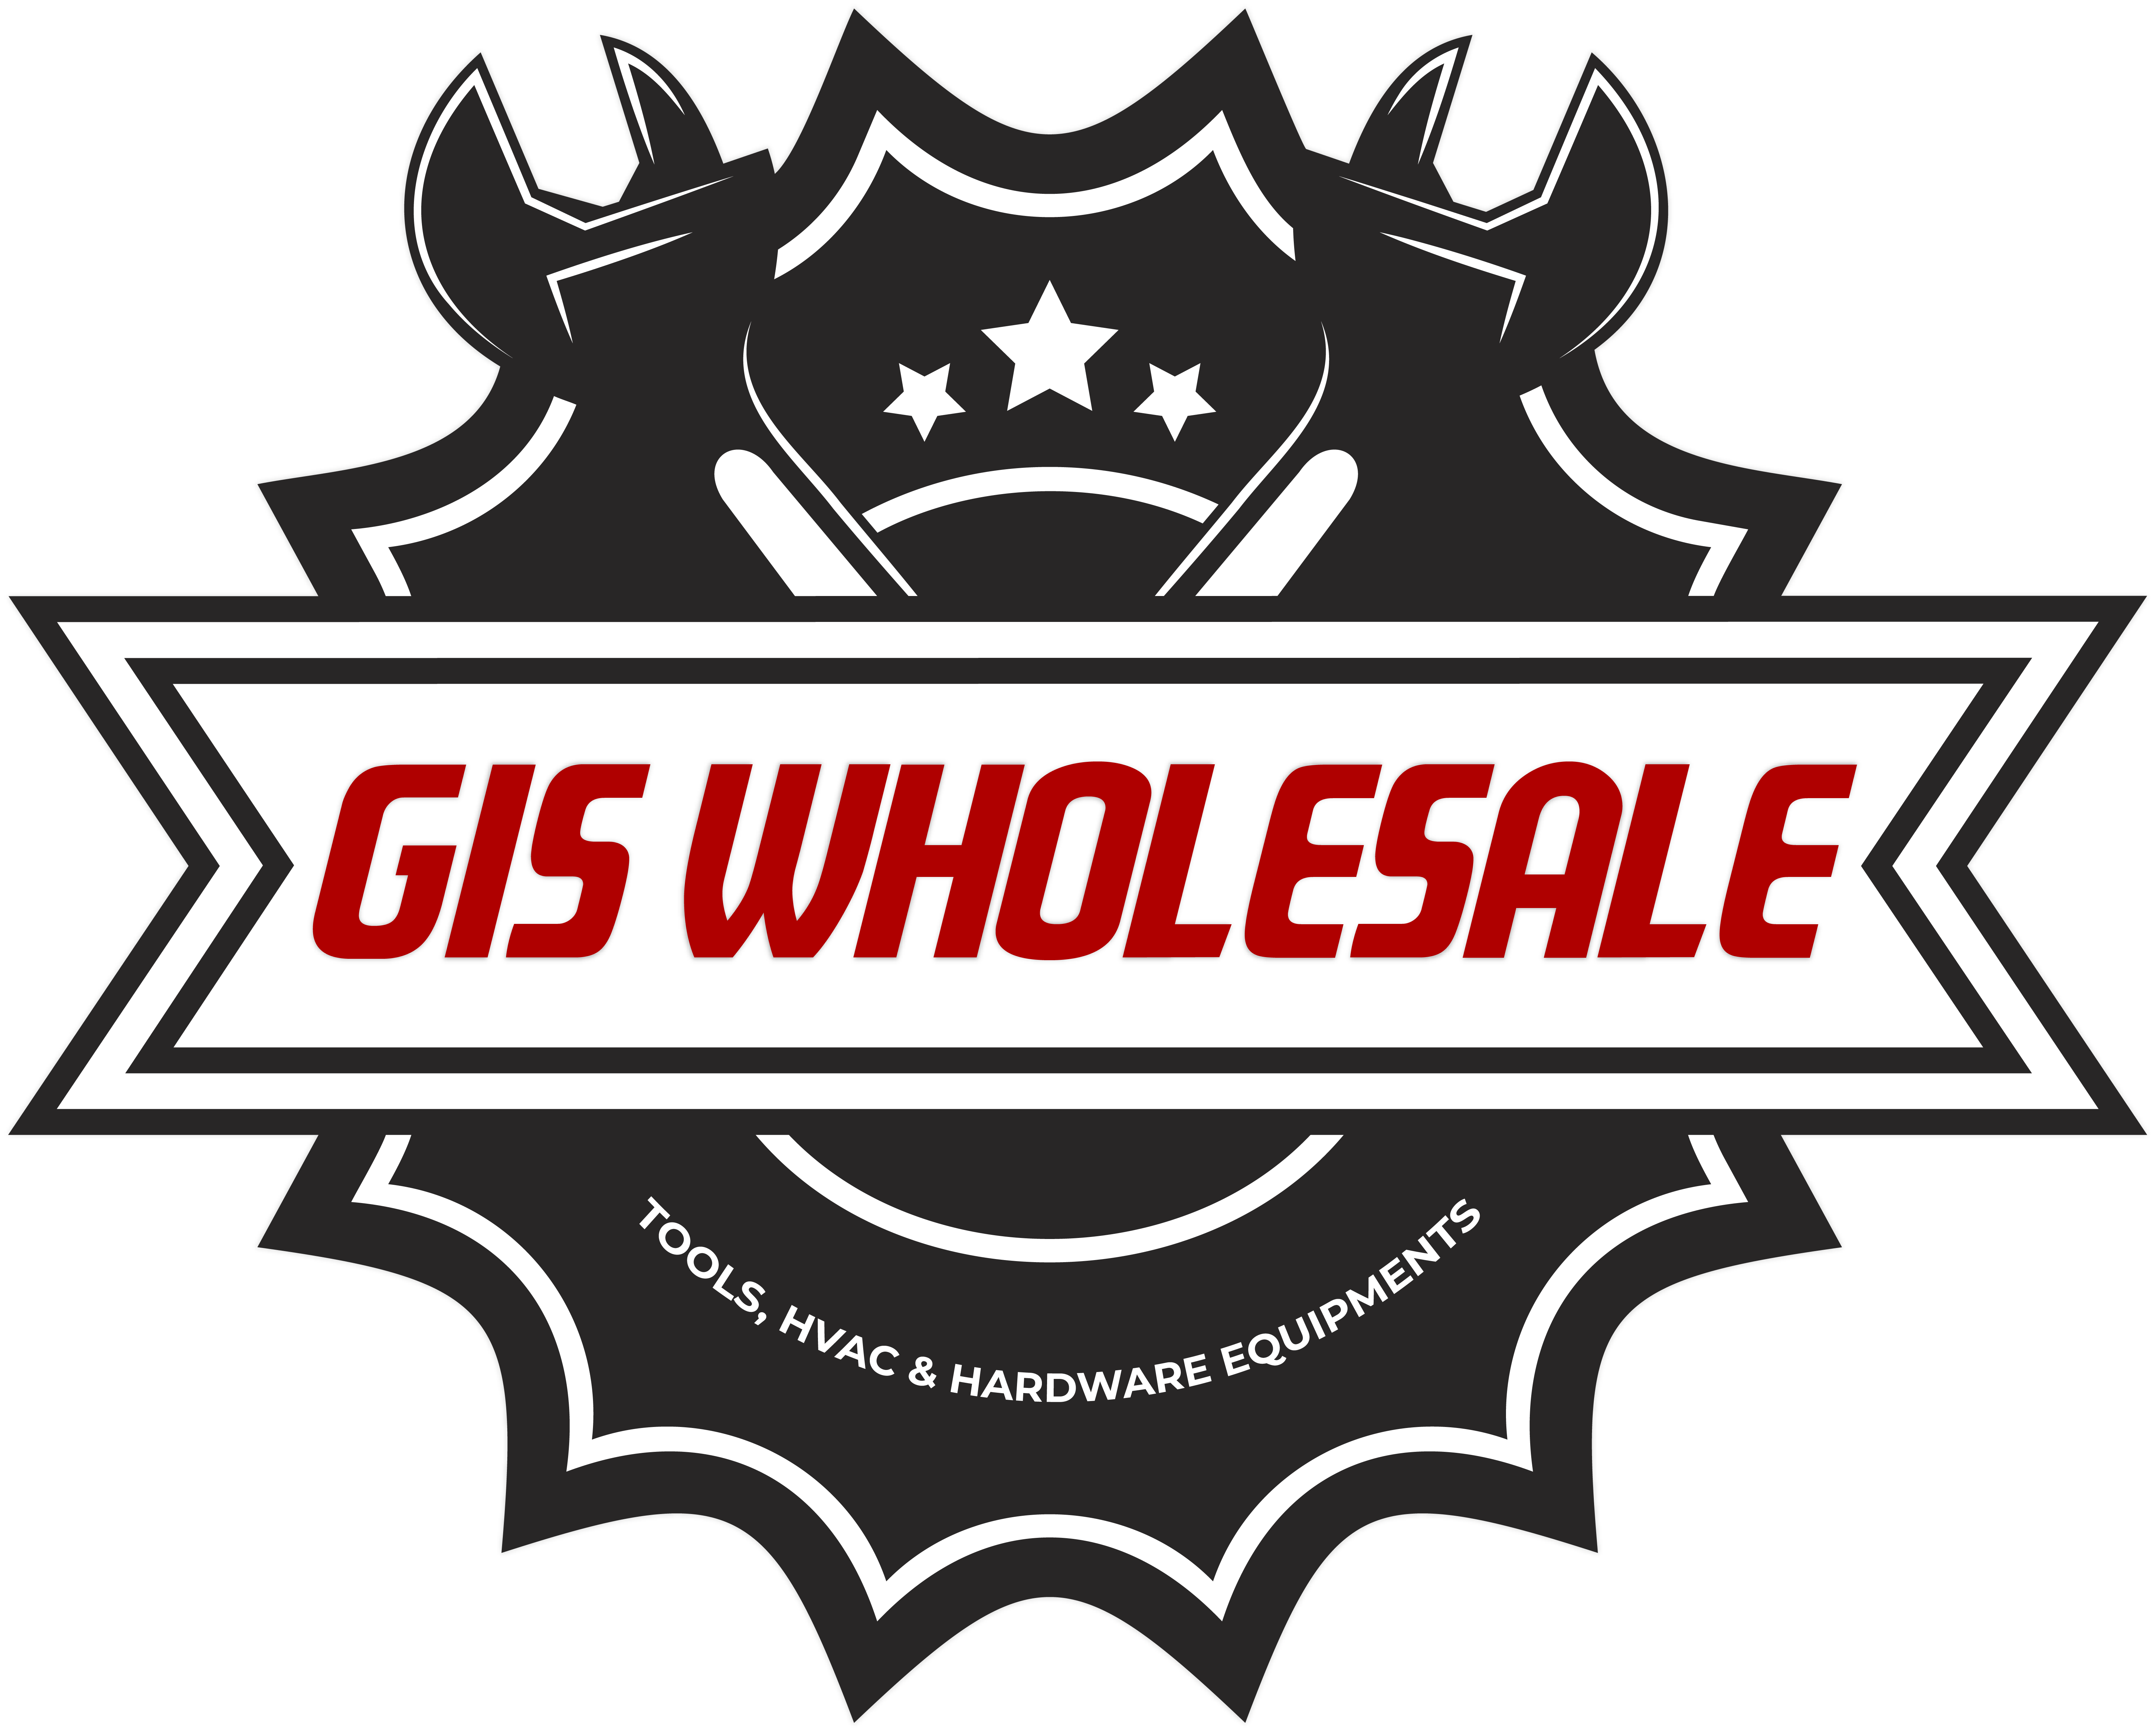 Wholesale Portal